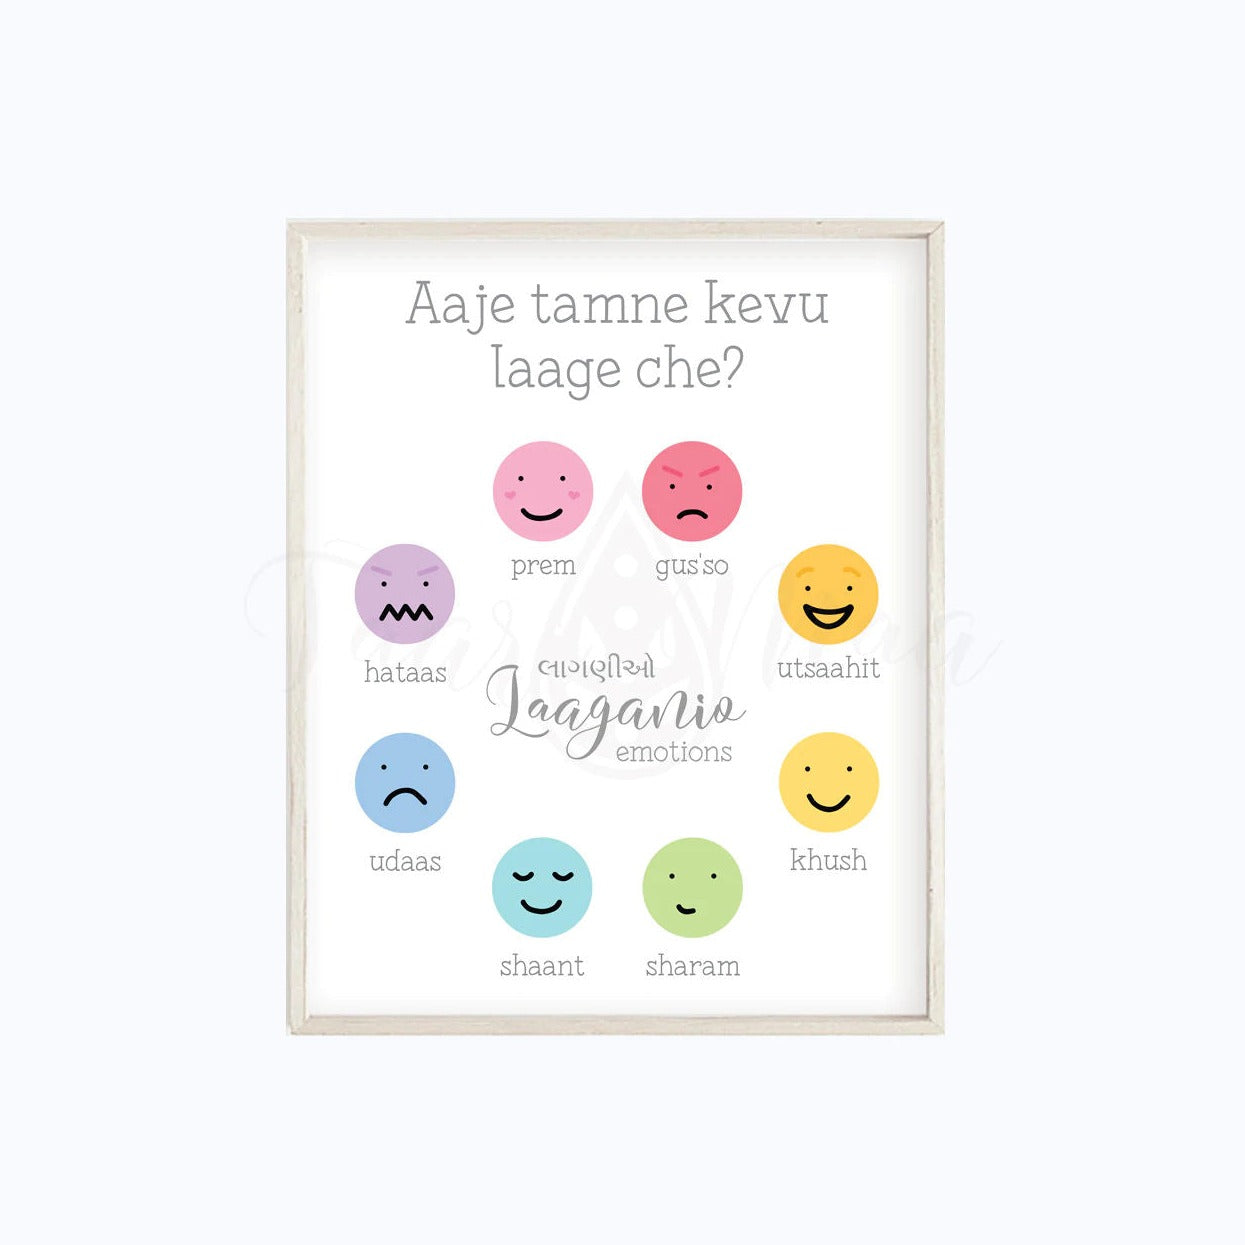 Bilingual Feelings & Emotions Poster by Taari Maa